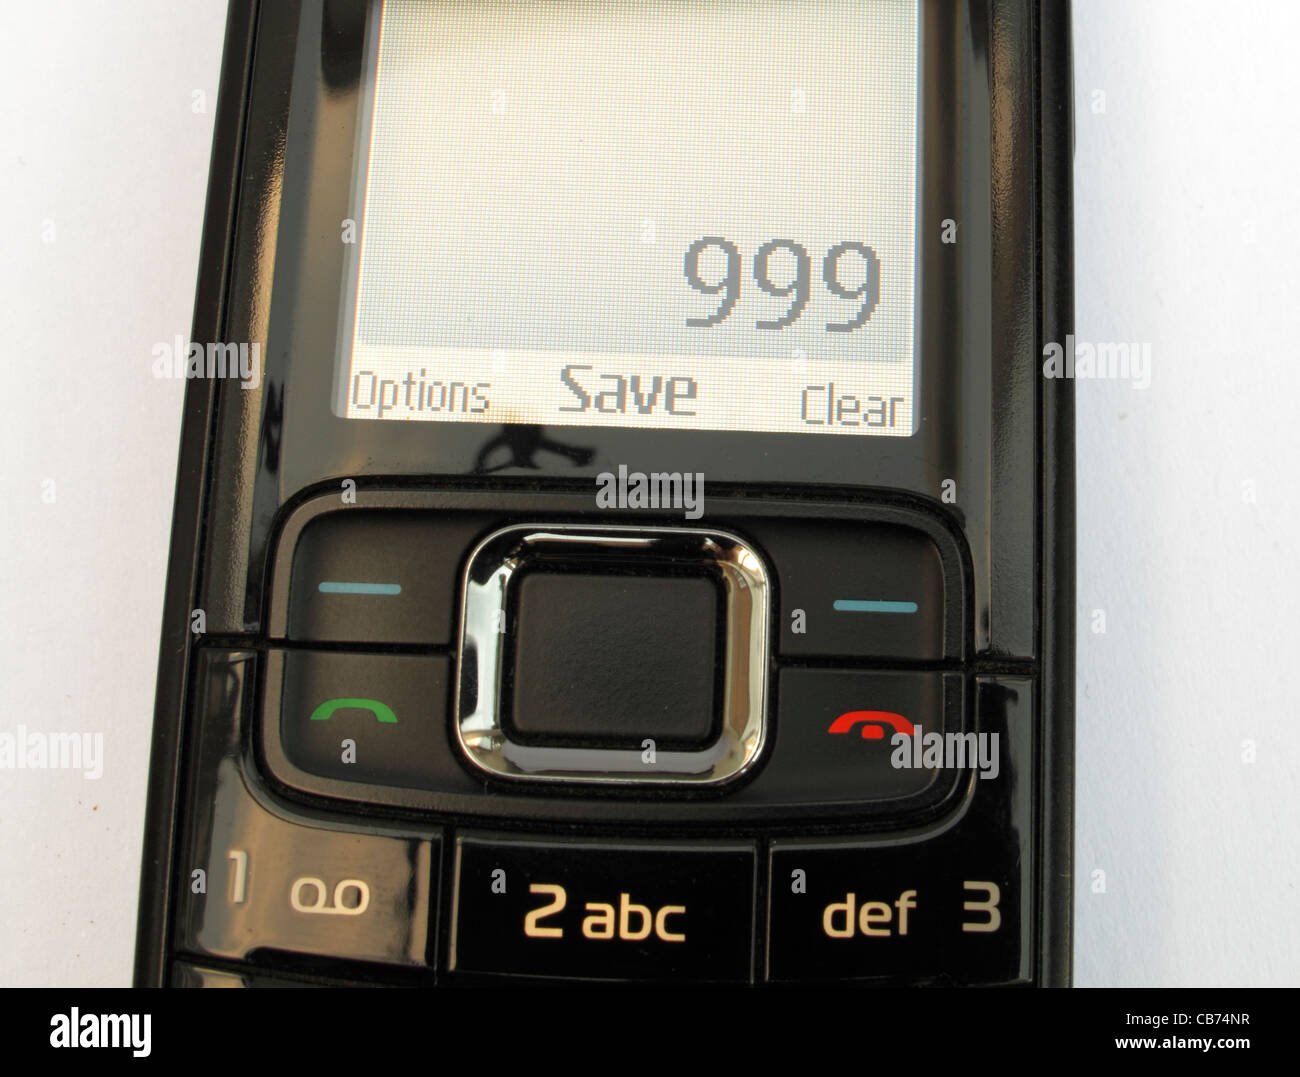 telefono movil con pantalla mostrando numero 1